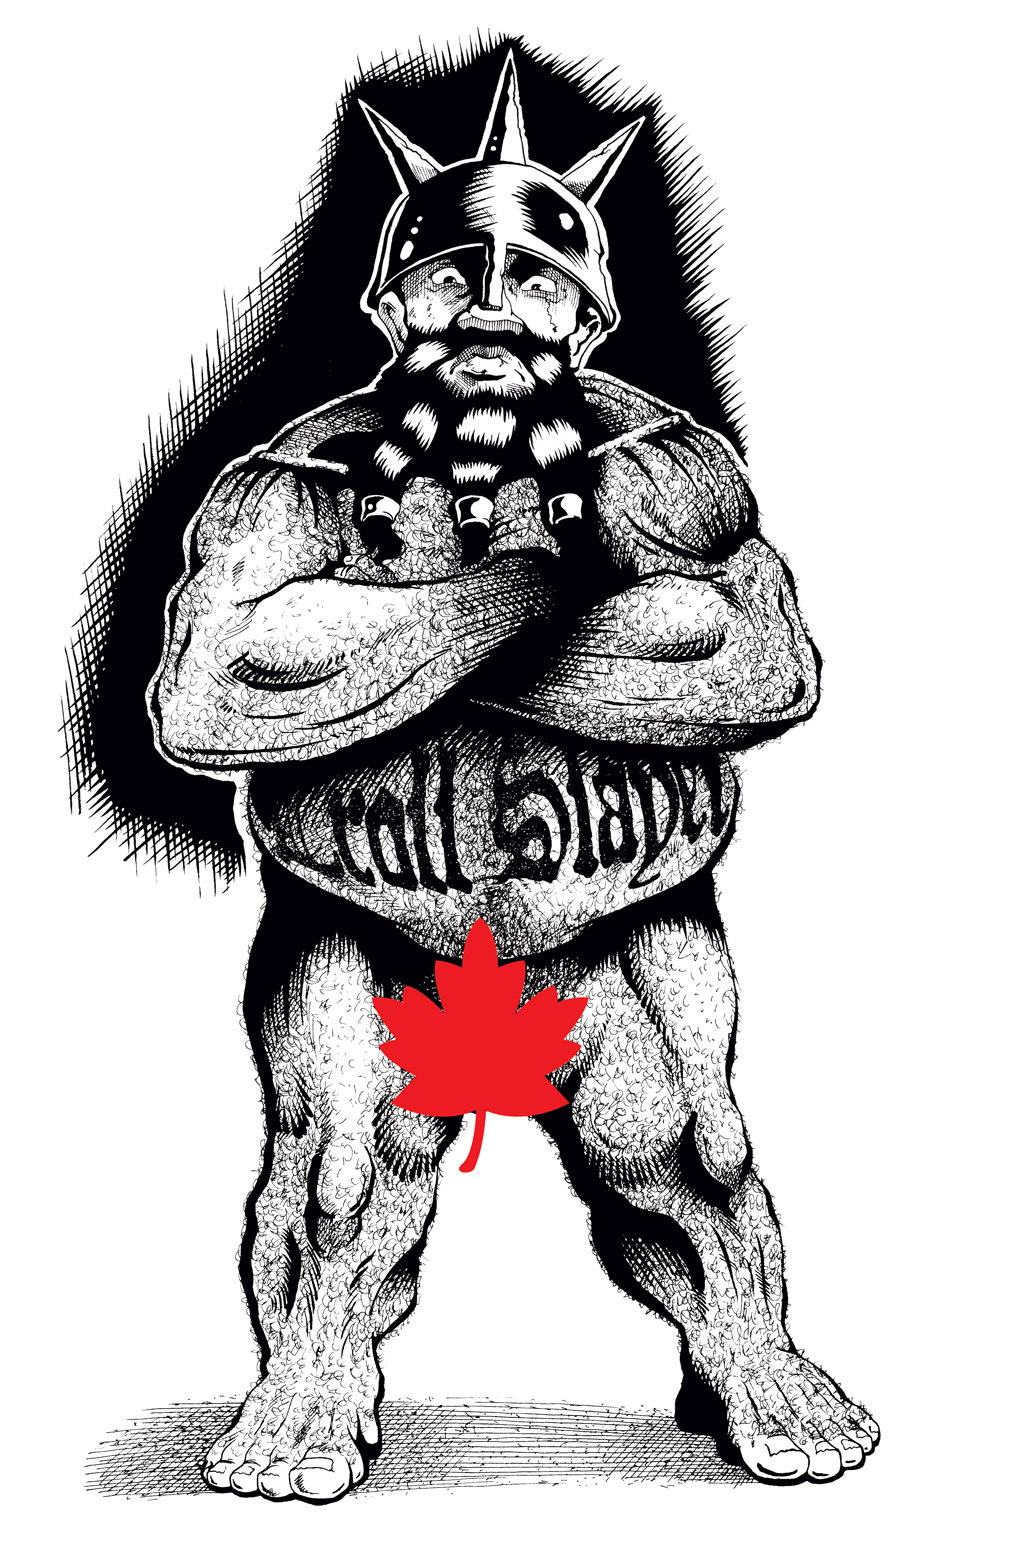 Nude Troll Slayer inks by Von Allan